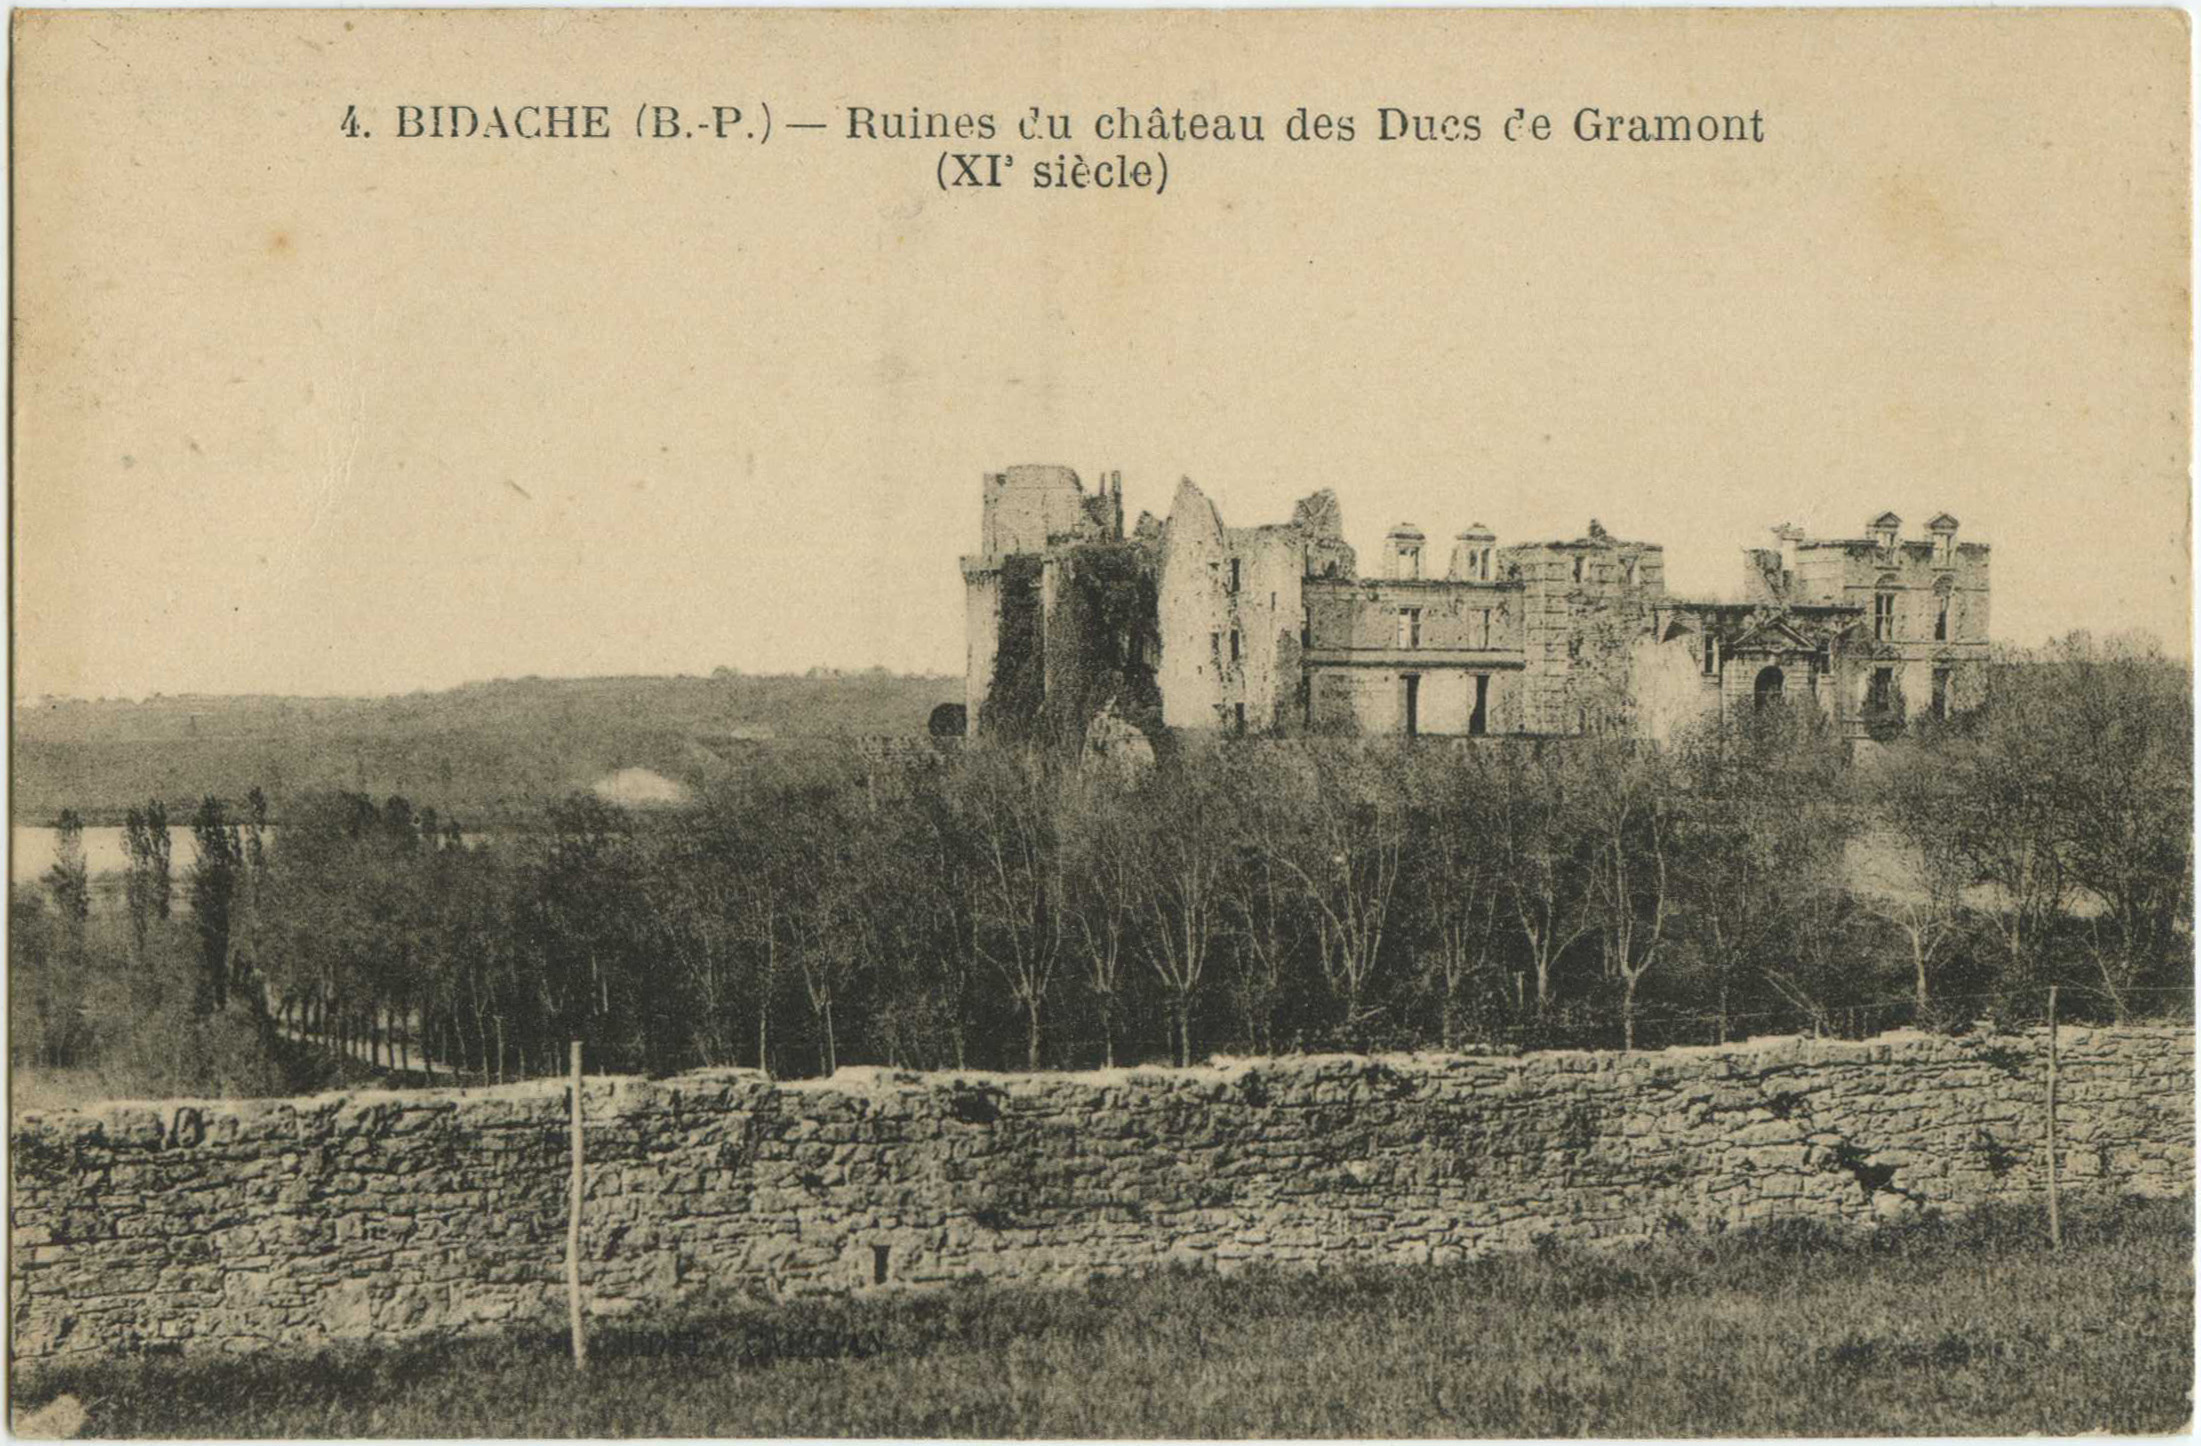 Bidache - Ruines du château des Ducs de Gramont (XI<sup>e</sup> siècle)